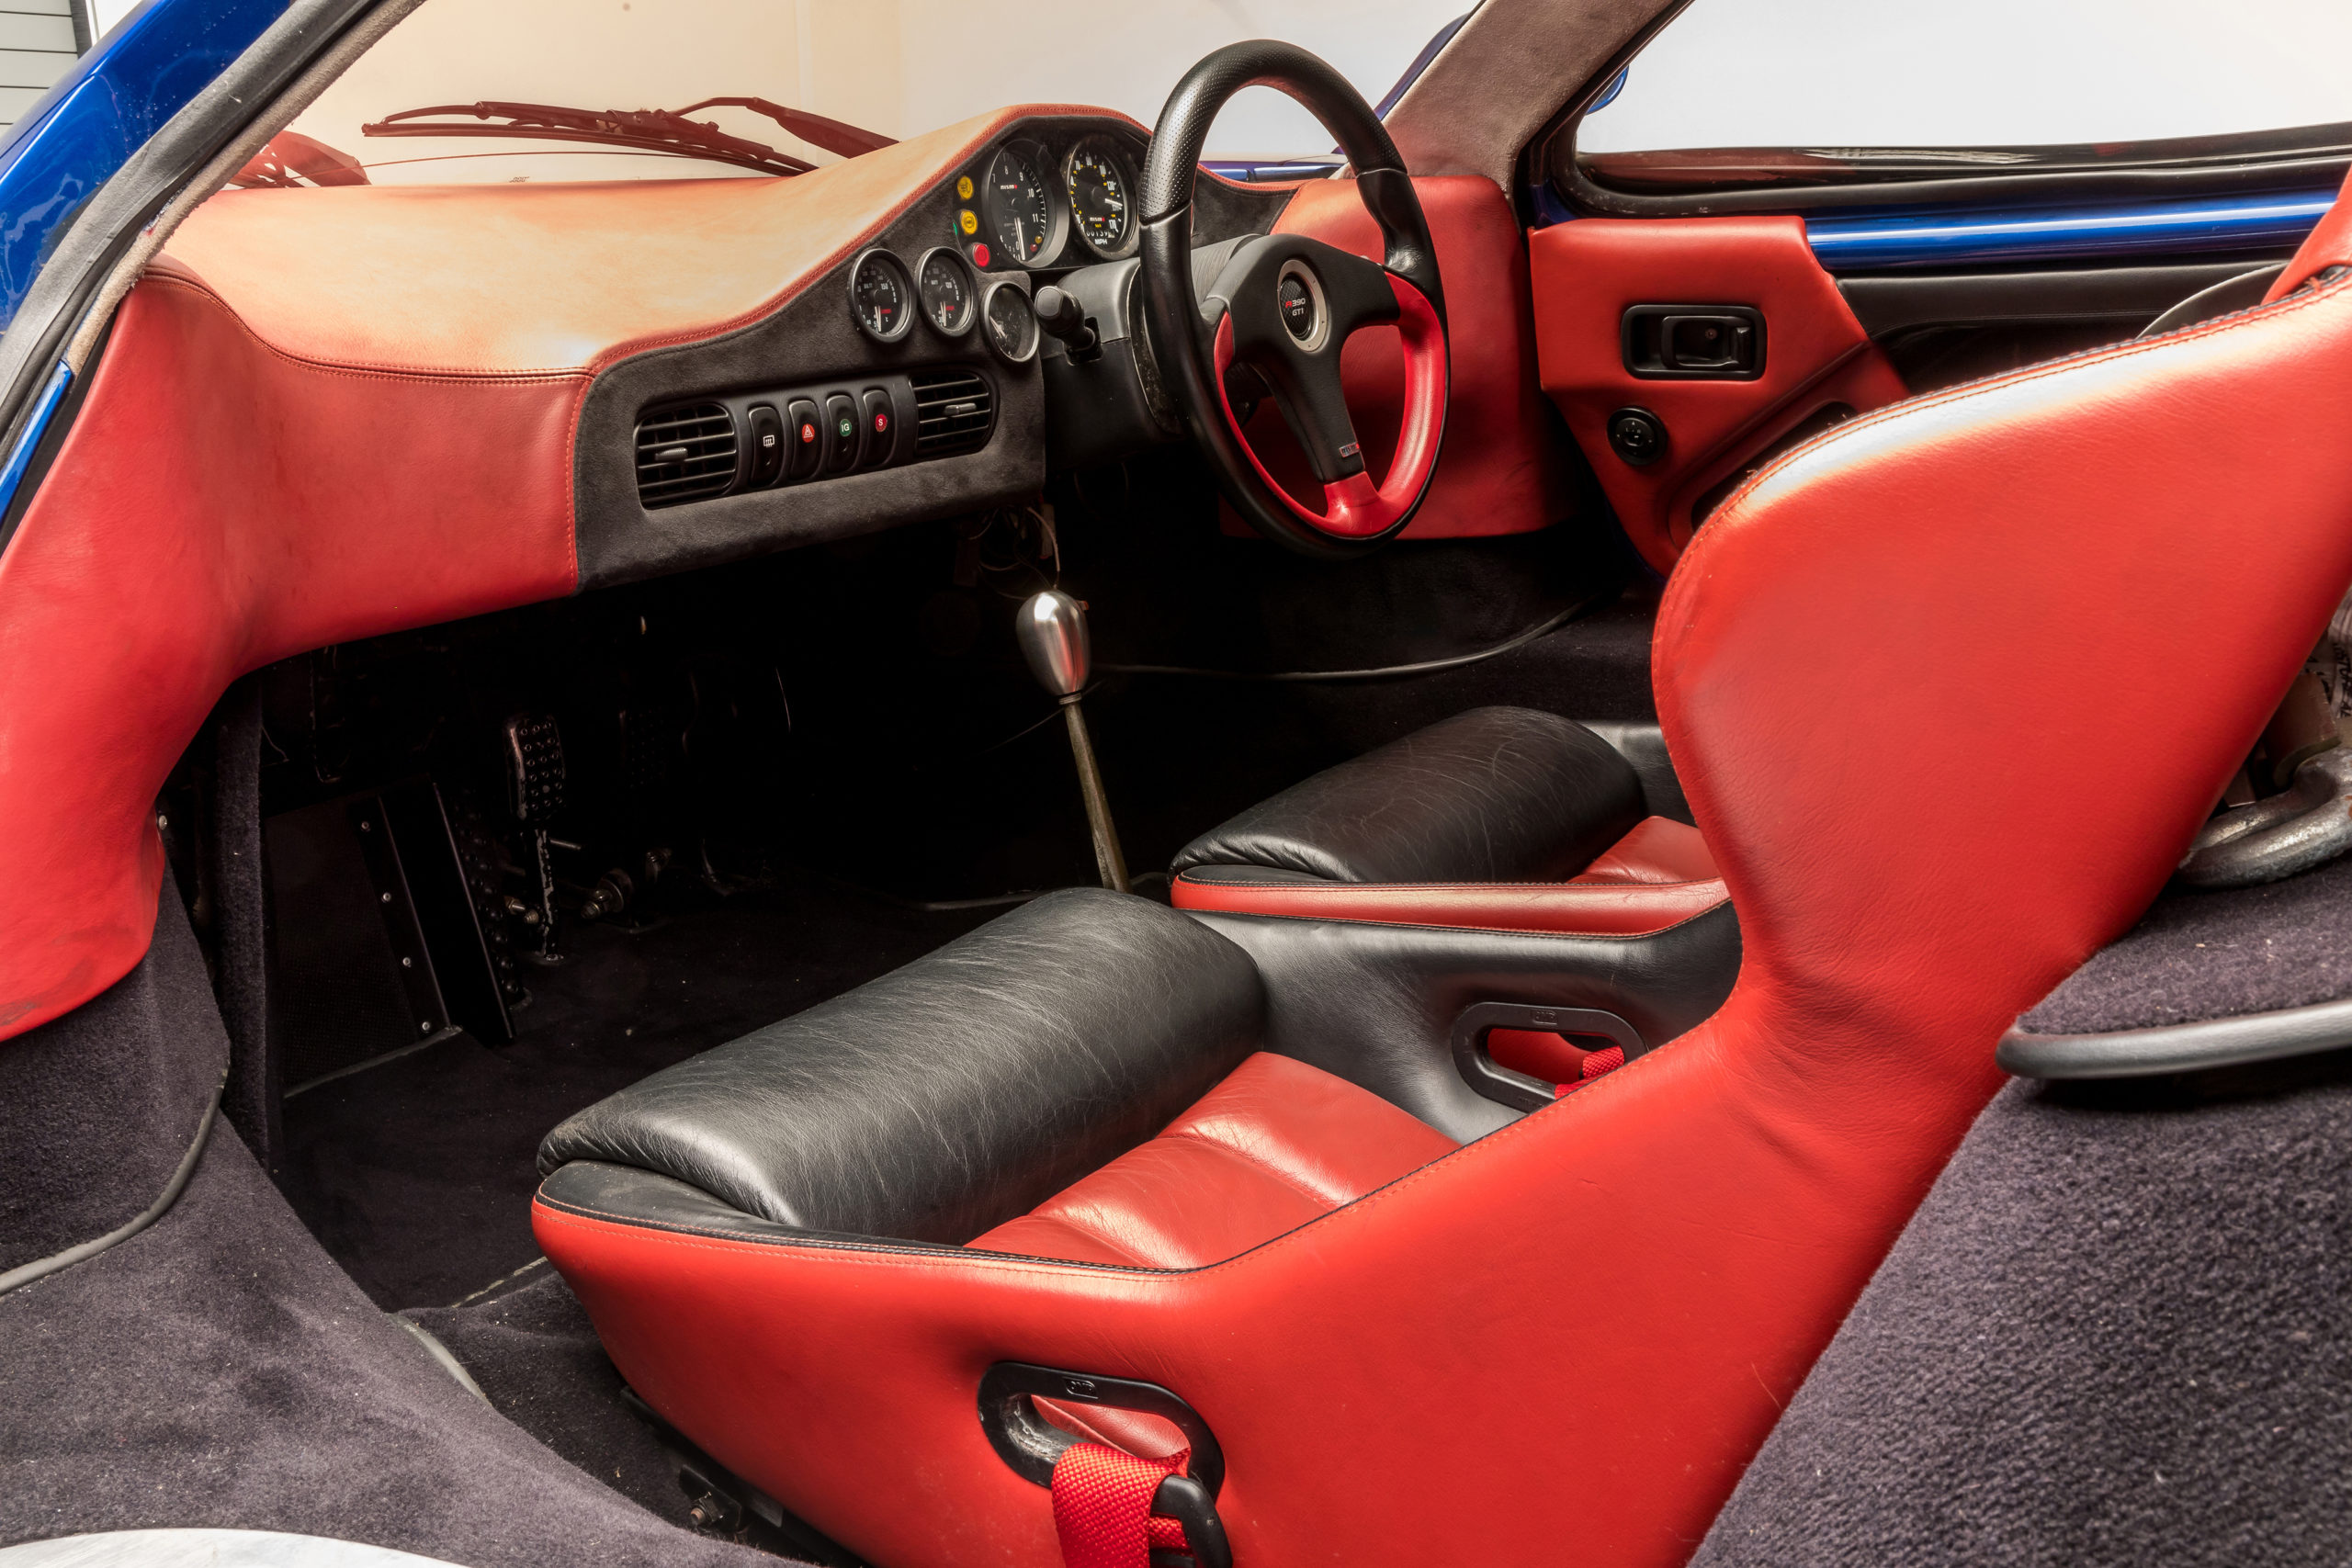 Nissan R390 GT1 interior